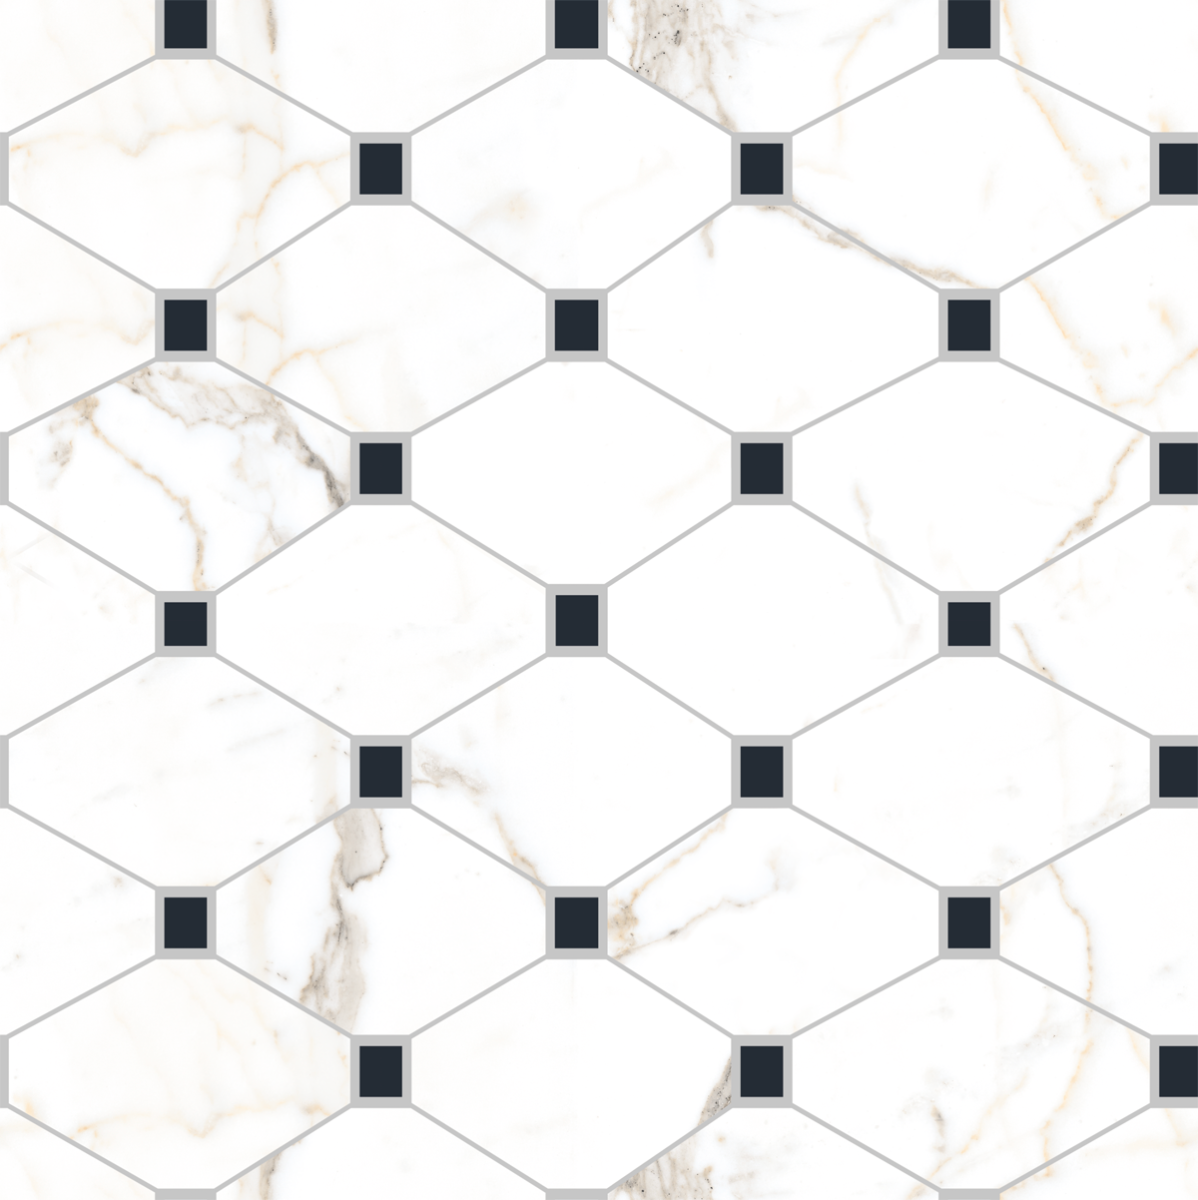 Digital Tiles for Living Room Tiles, Kitchen Tiles, Bedroom Tiles, Accent Tiles, Office Tiles, Bar Tiles, Restaurant Tiles, Hospital Tiles, Bar/Restaurant, Commercial/Office